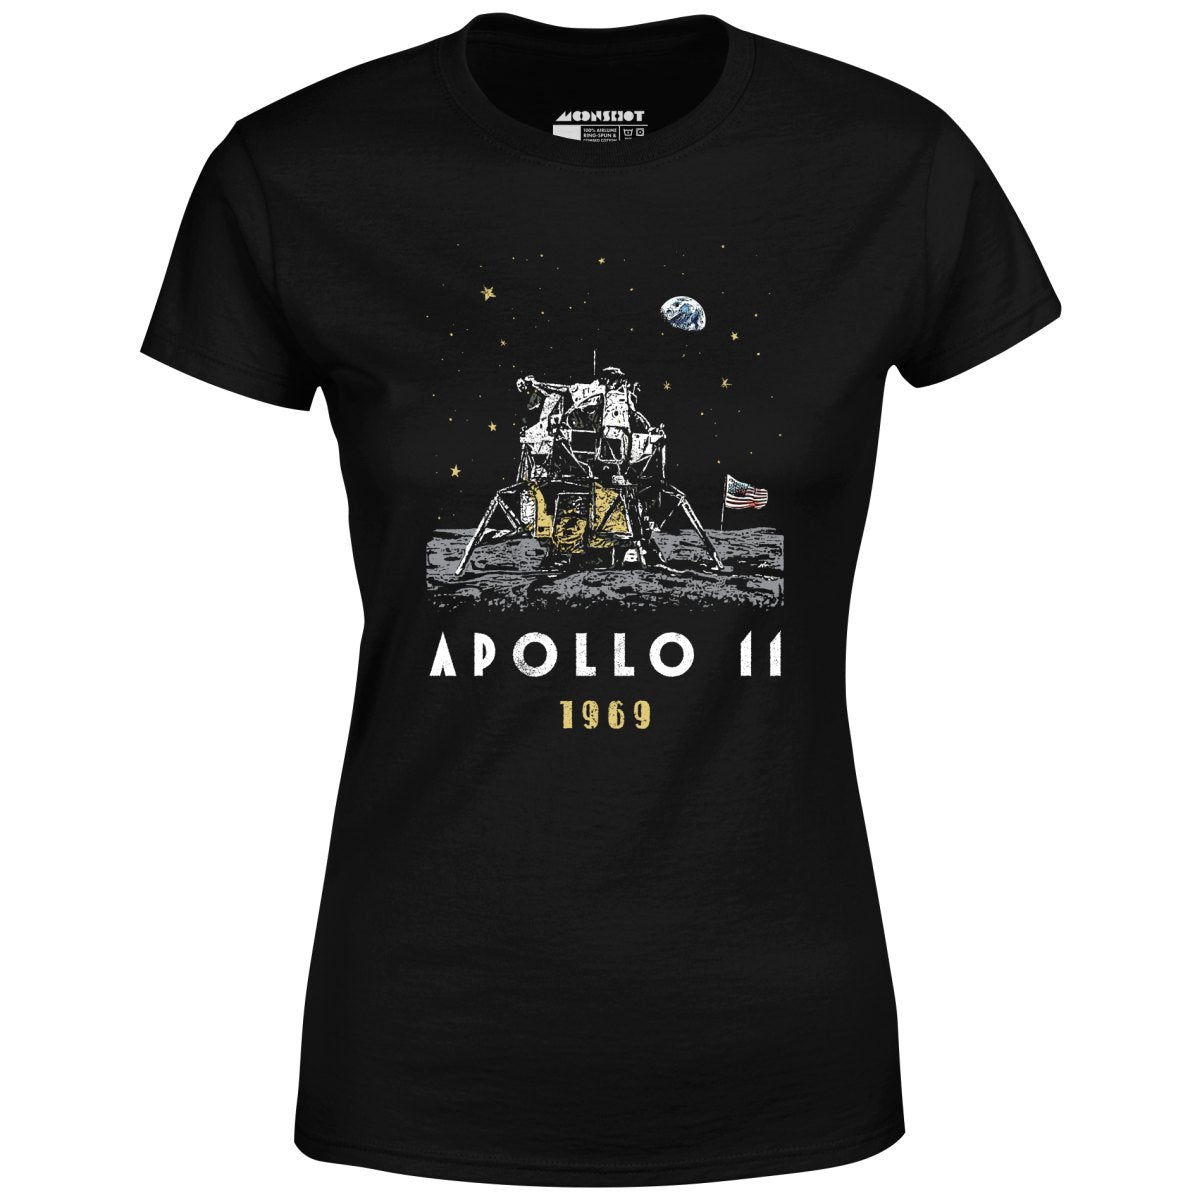 Apollo 11 - Women's T-Shirt